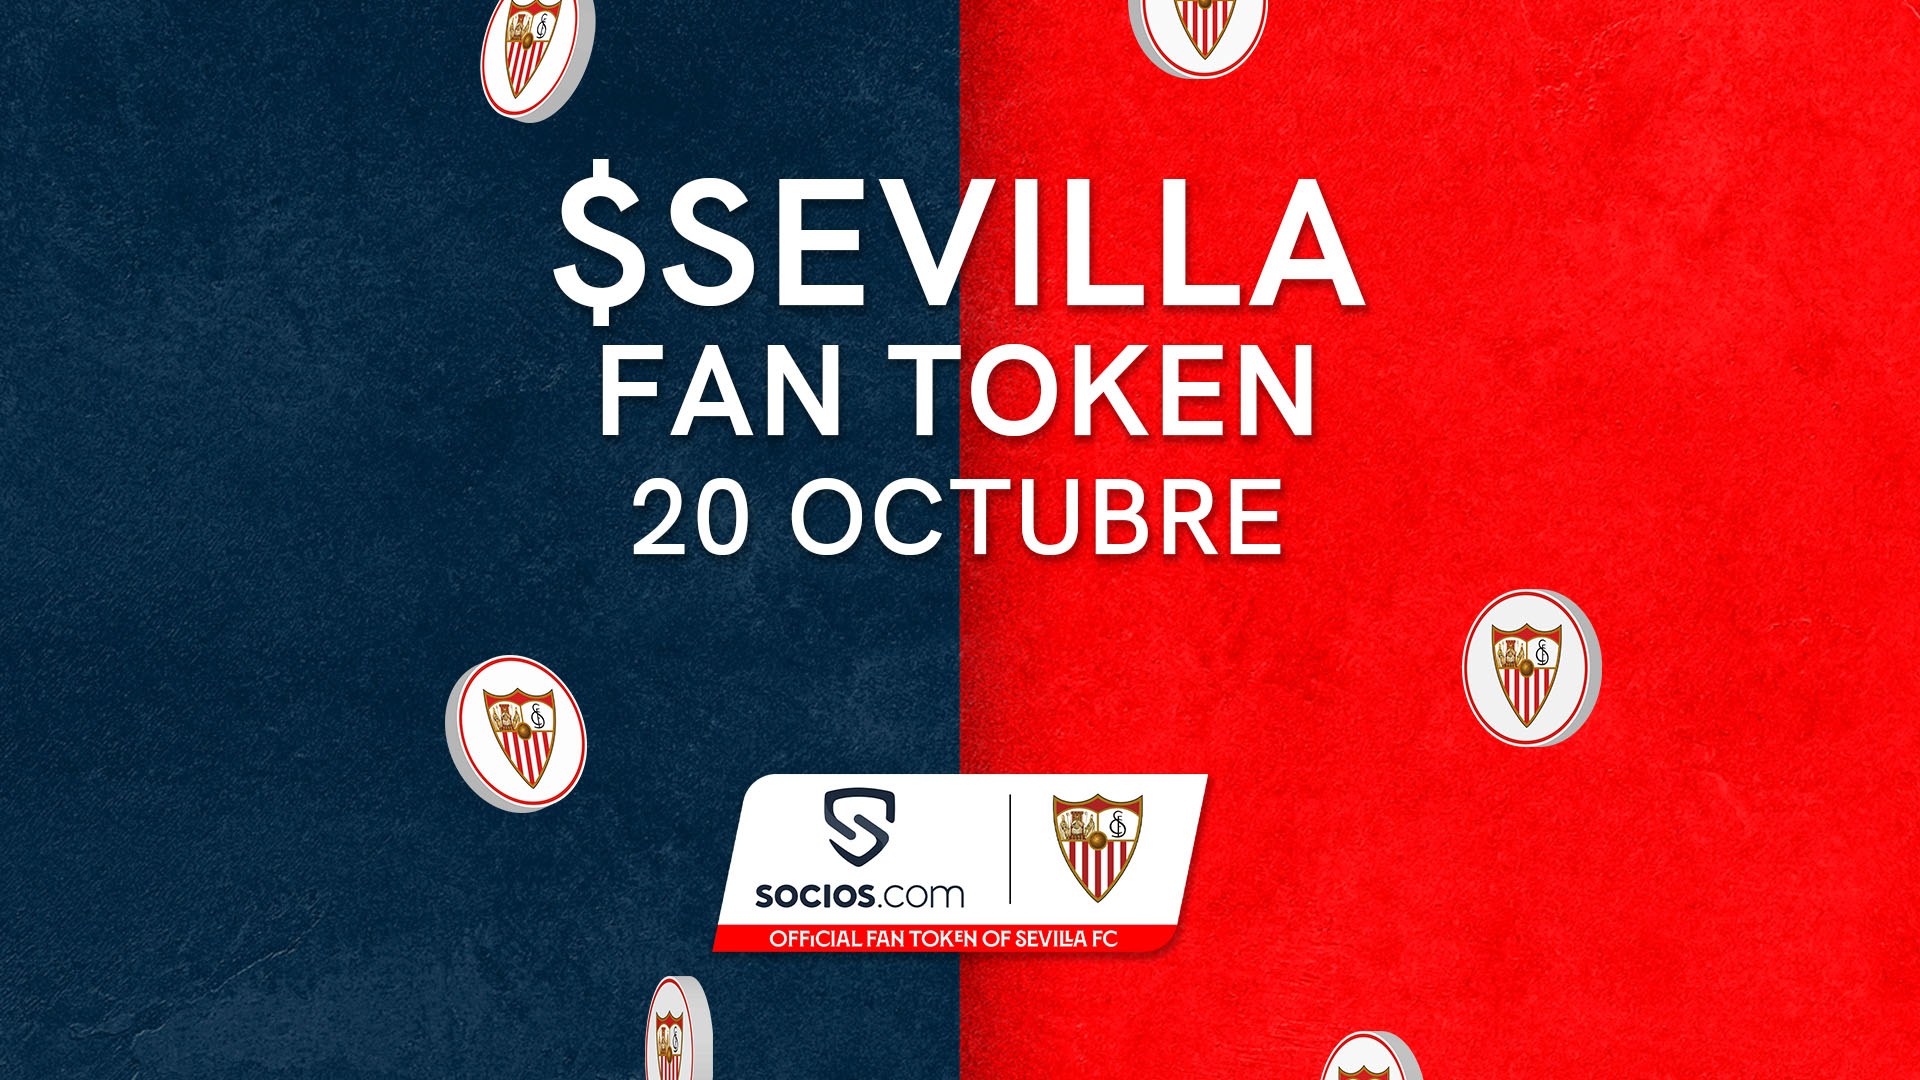 El Fan Token del Sevilla FC, disponible desde el 20 de octubre